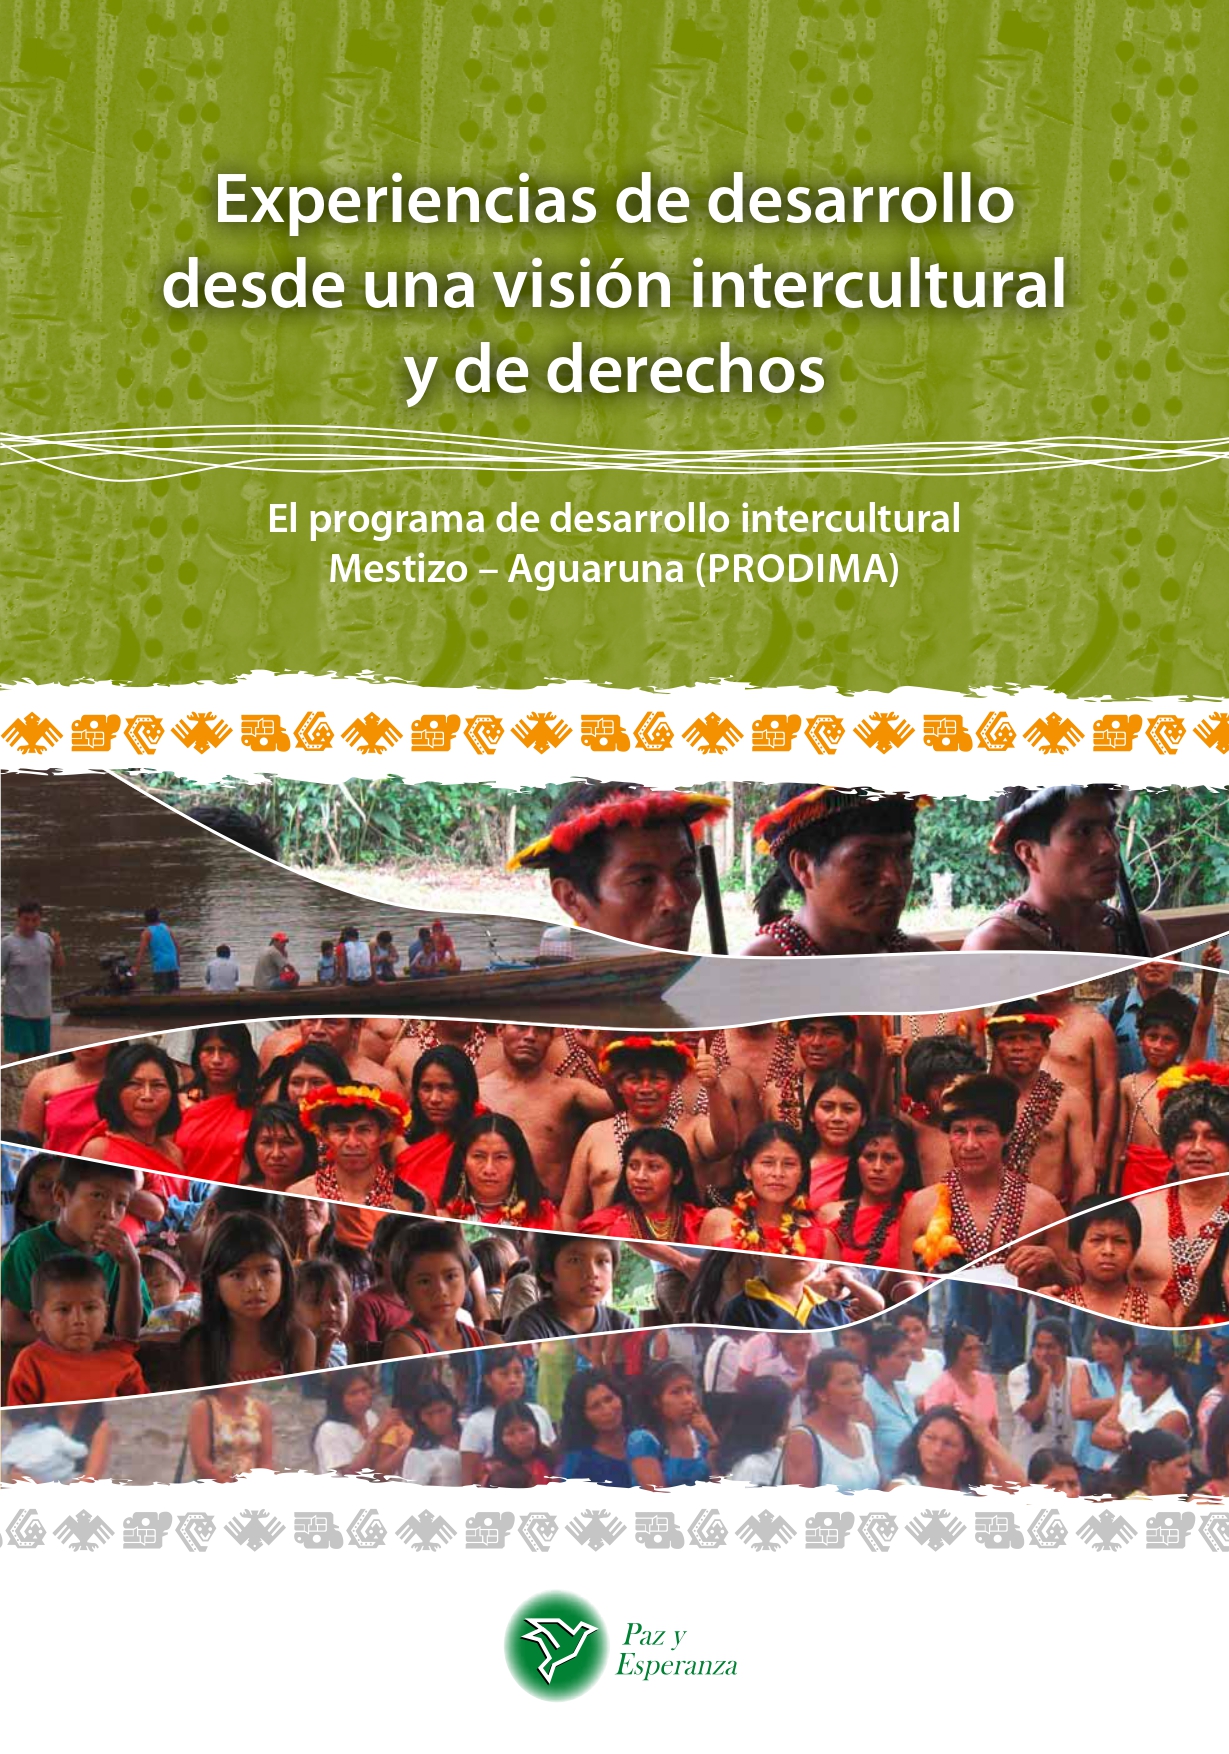 Ilustración con el título del texto y debajo imágenes diversas de pueblos indígenas selváticos